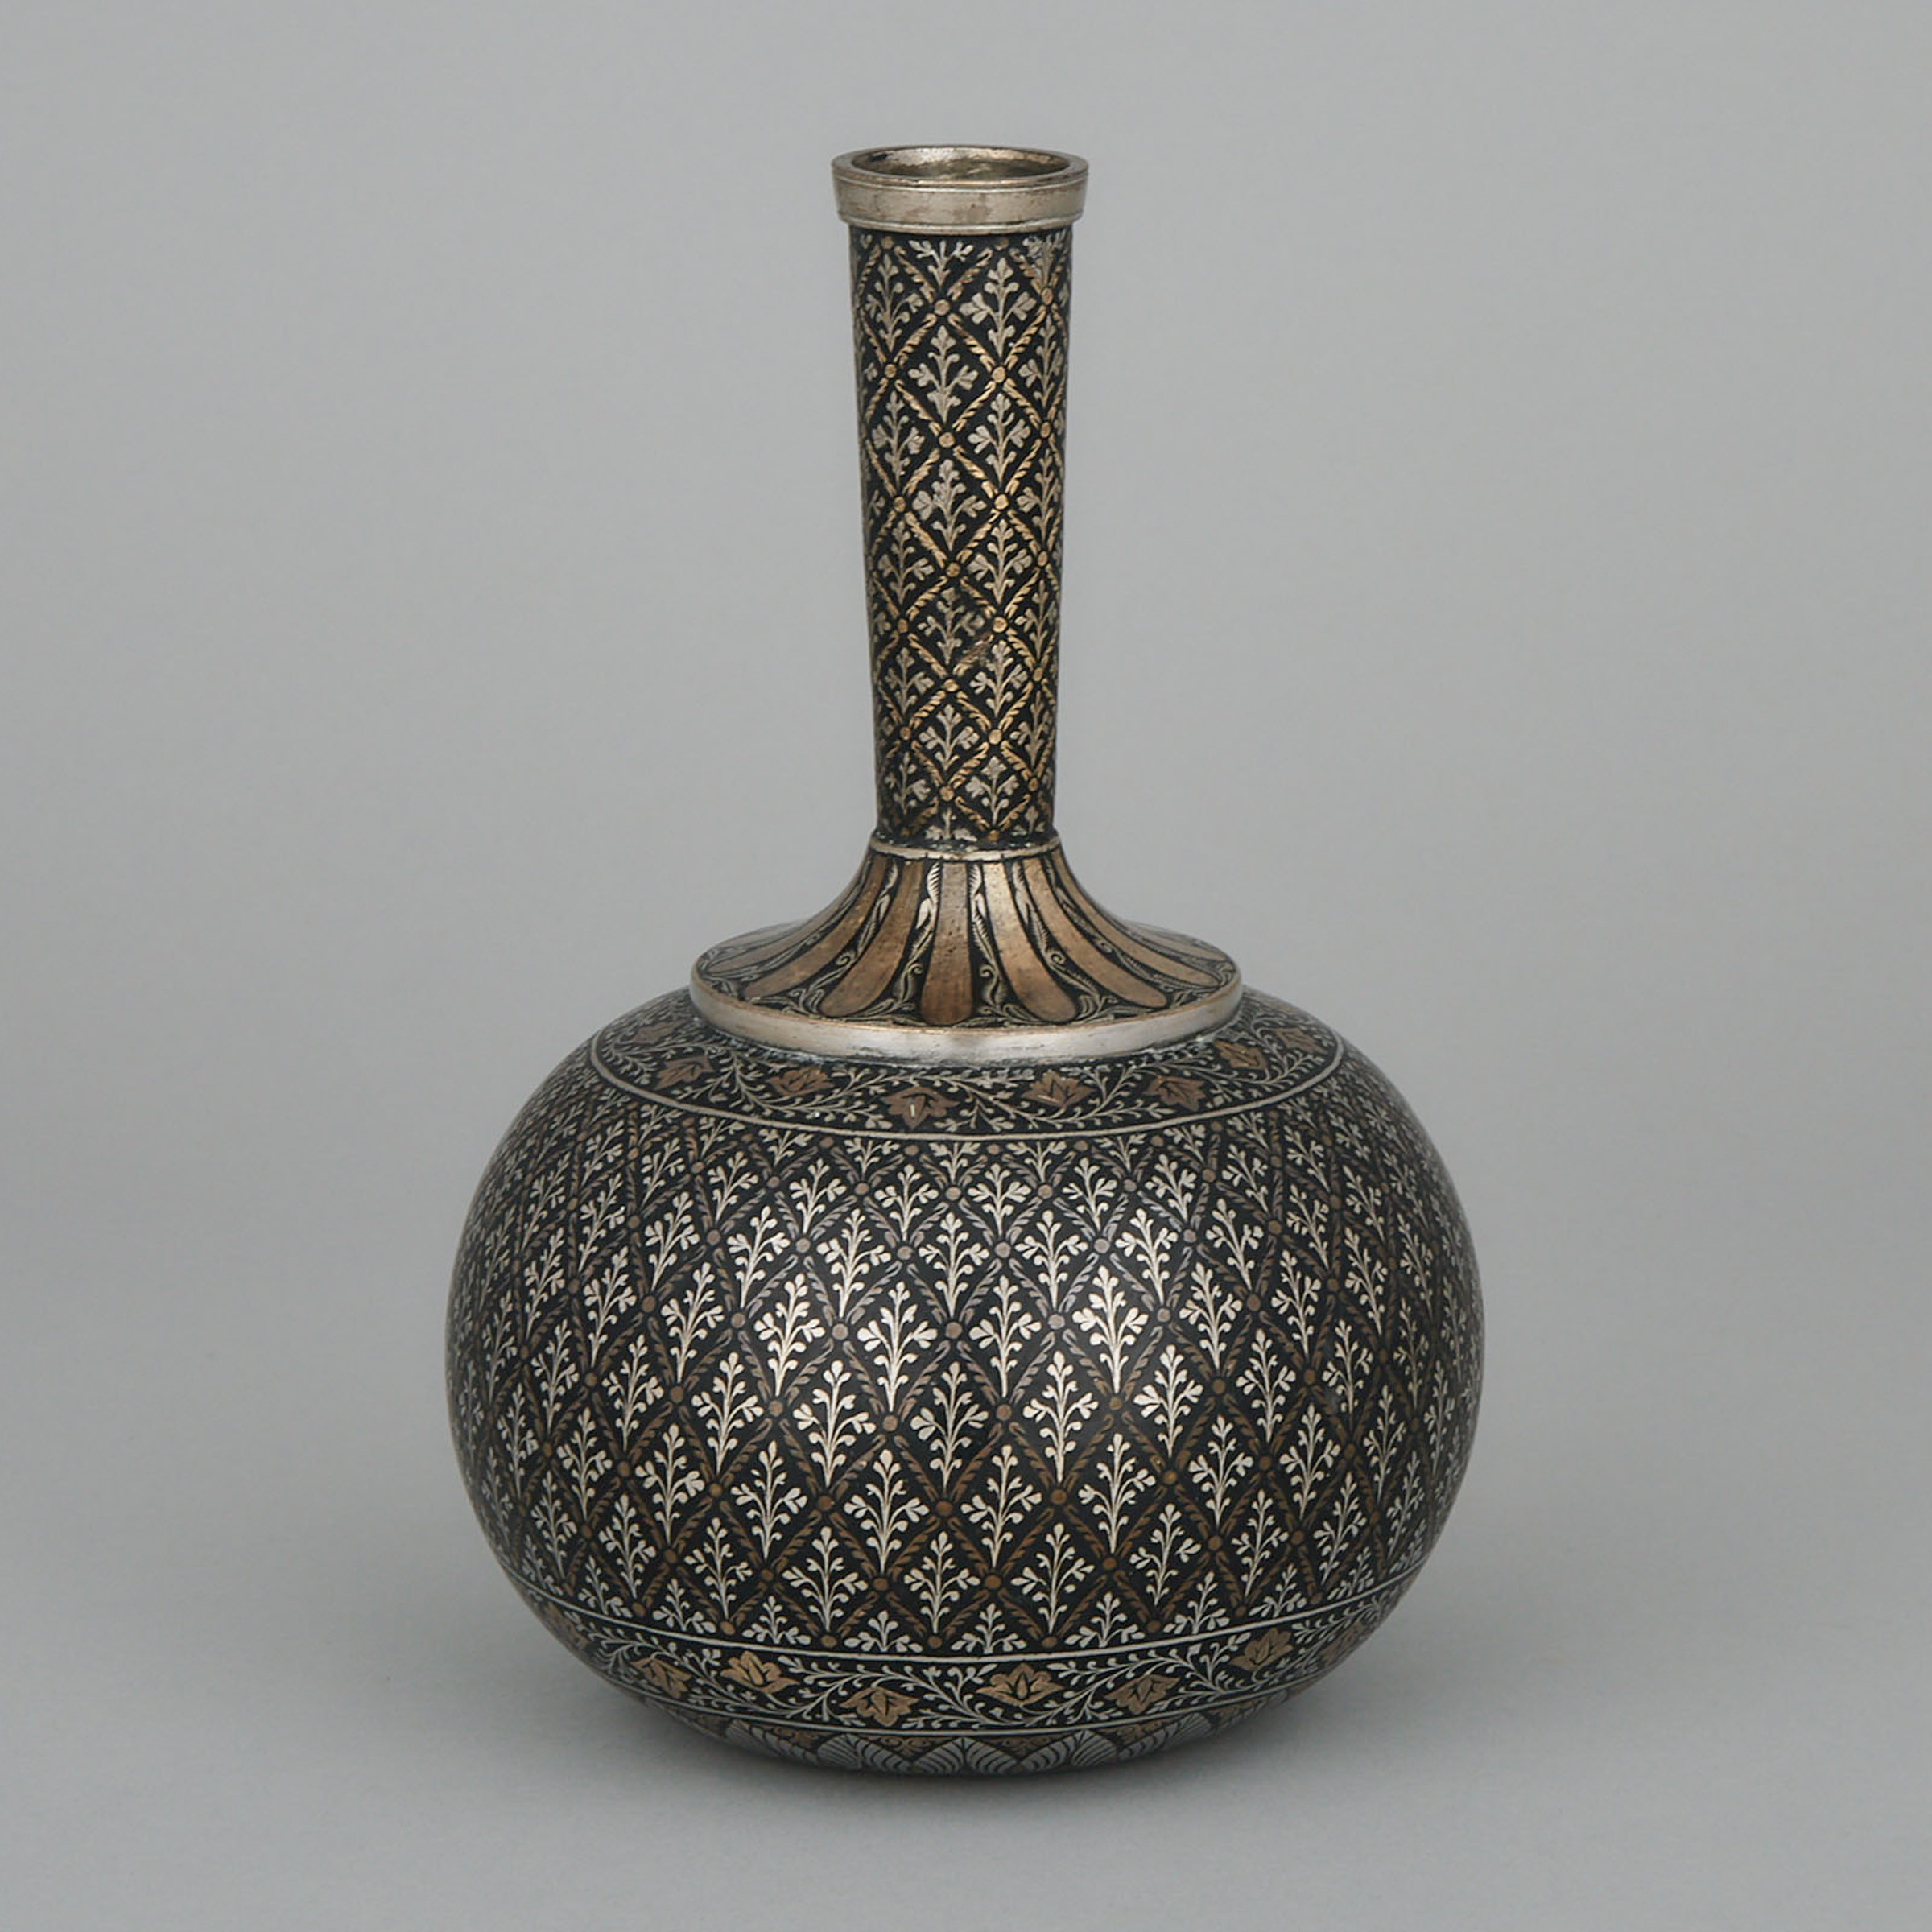 Kashmiri Damascened and Champleve Enamelled Bottle Vase, early 20th century